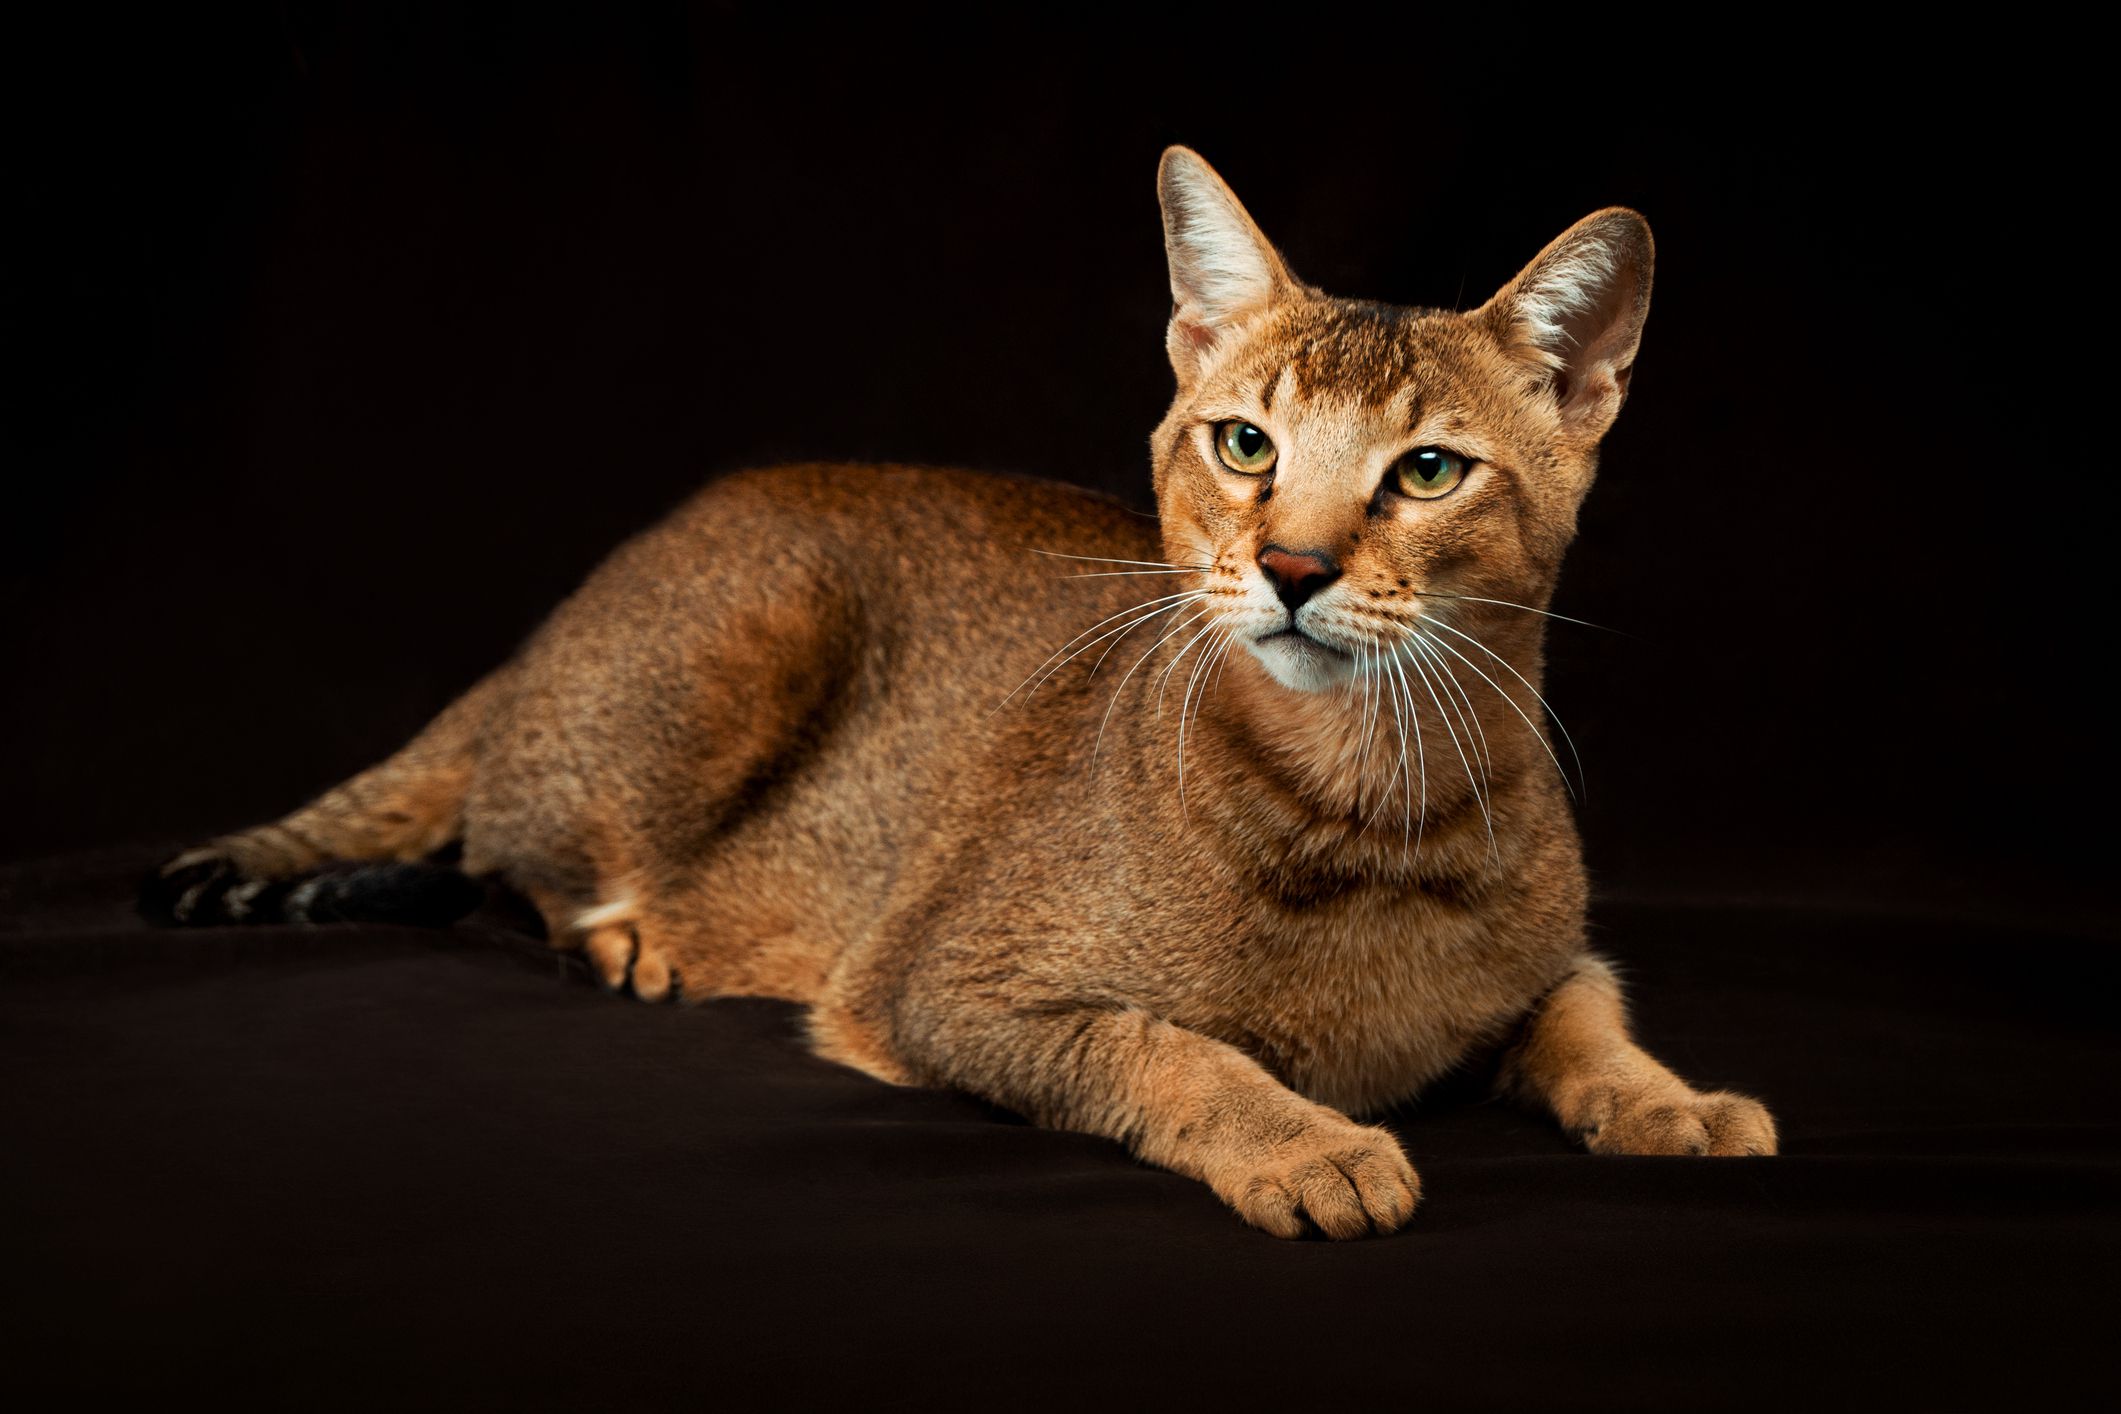 Chausie Cat — Profilo completo, storia e cure